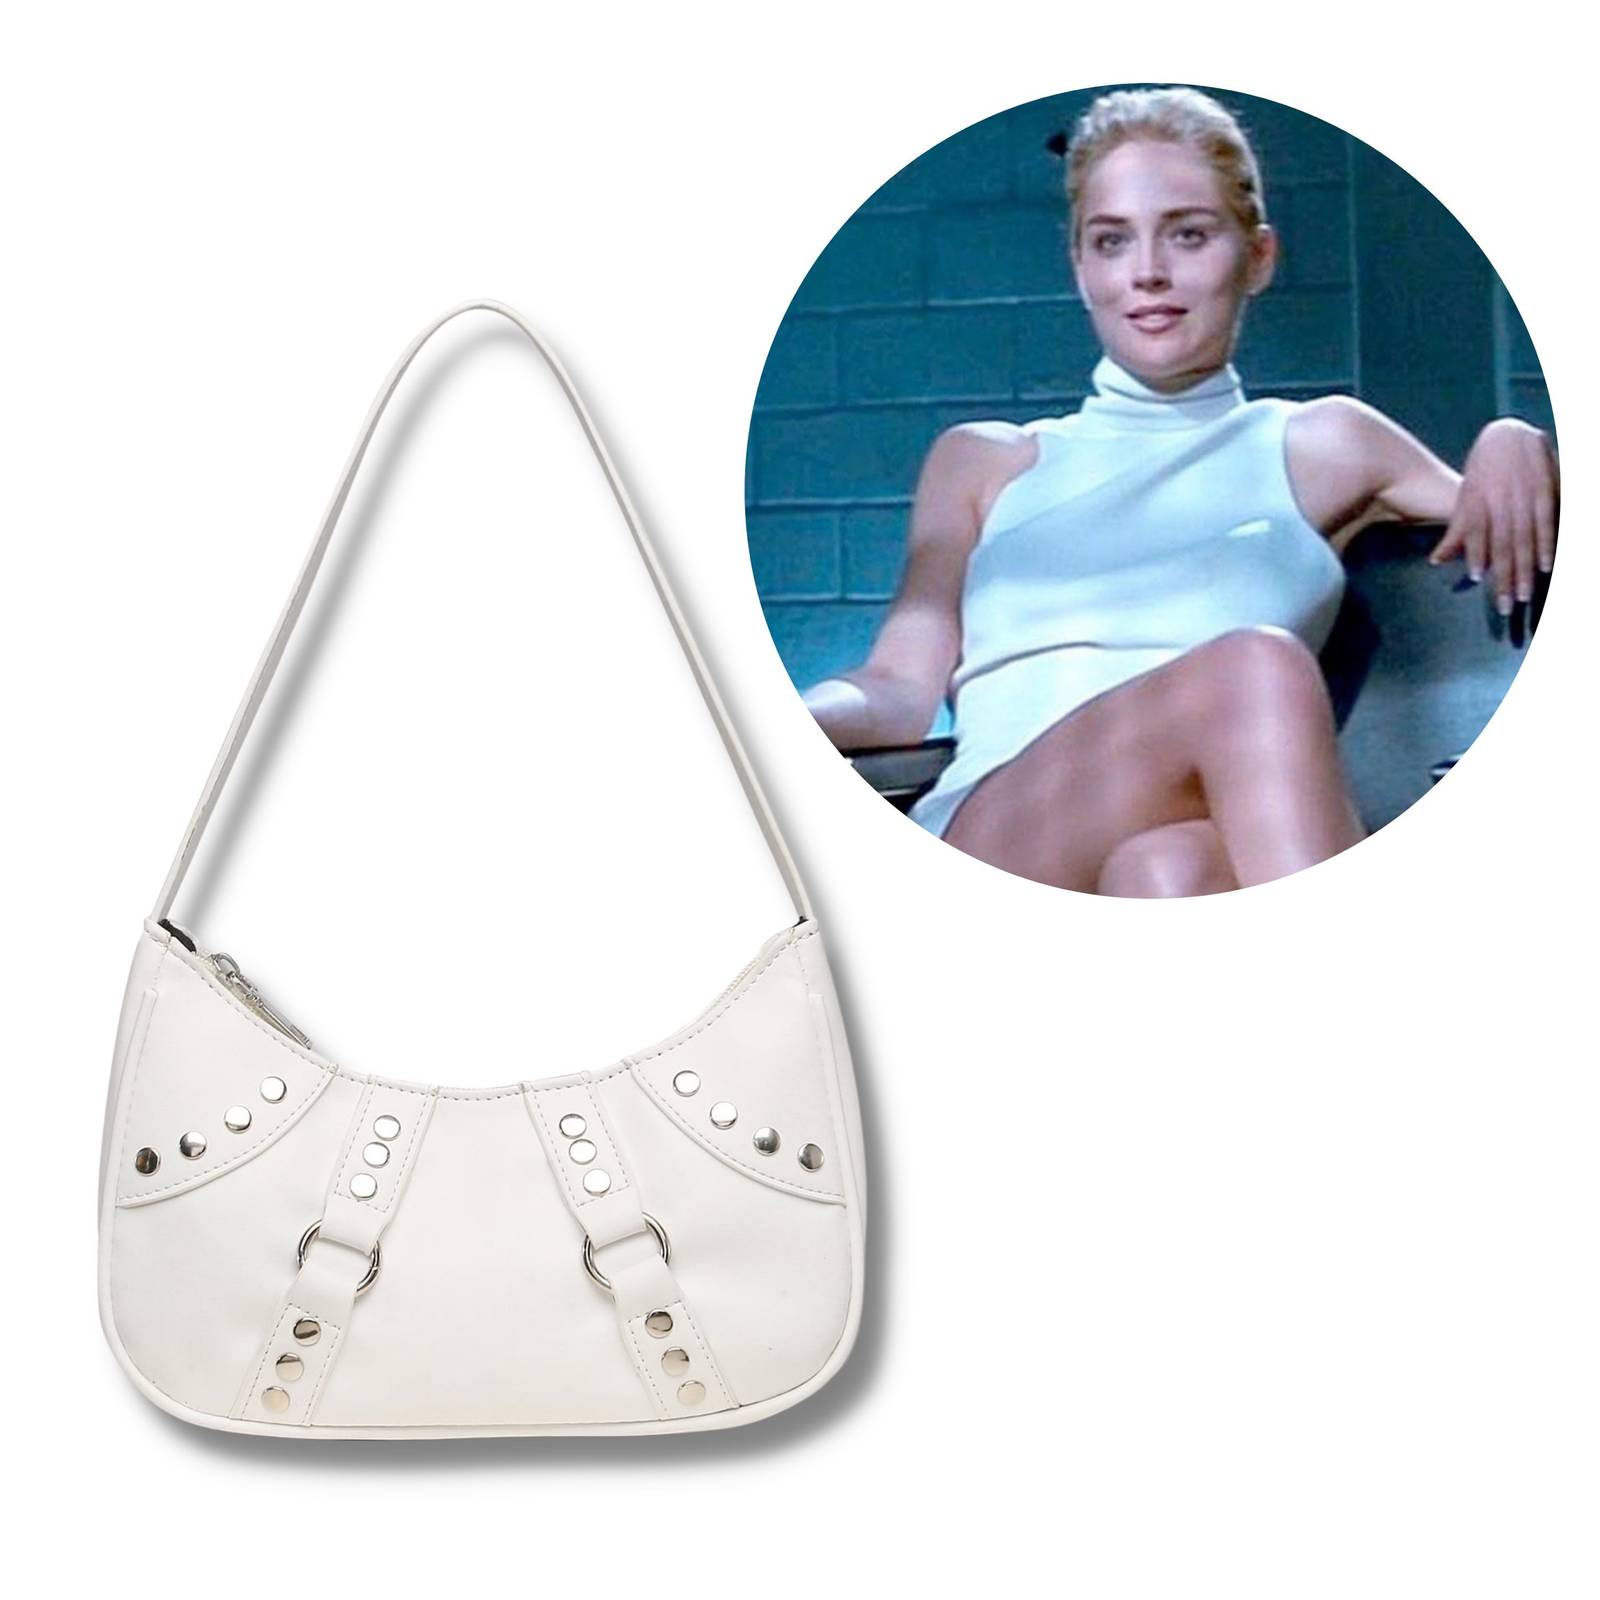 Basic Instinct movie inspired studded Handbag white shoulder hobo 90s gift idea